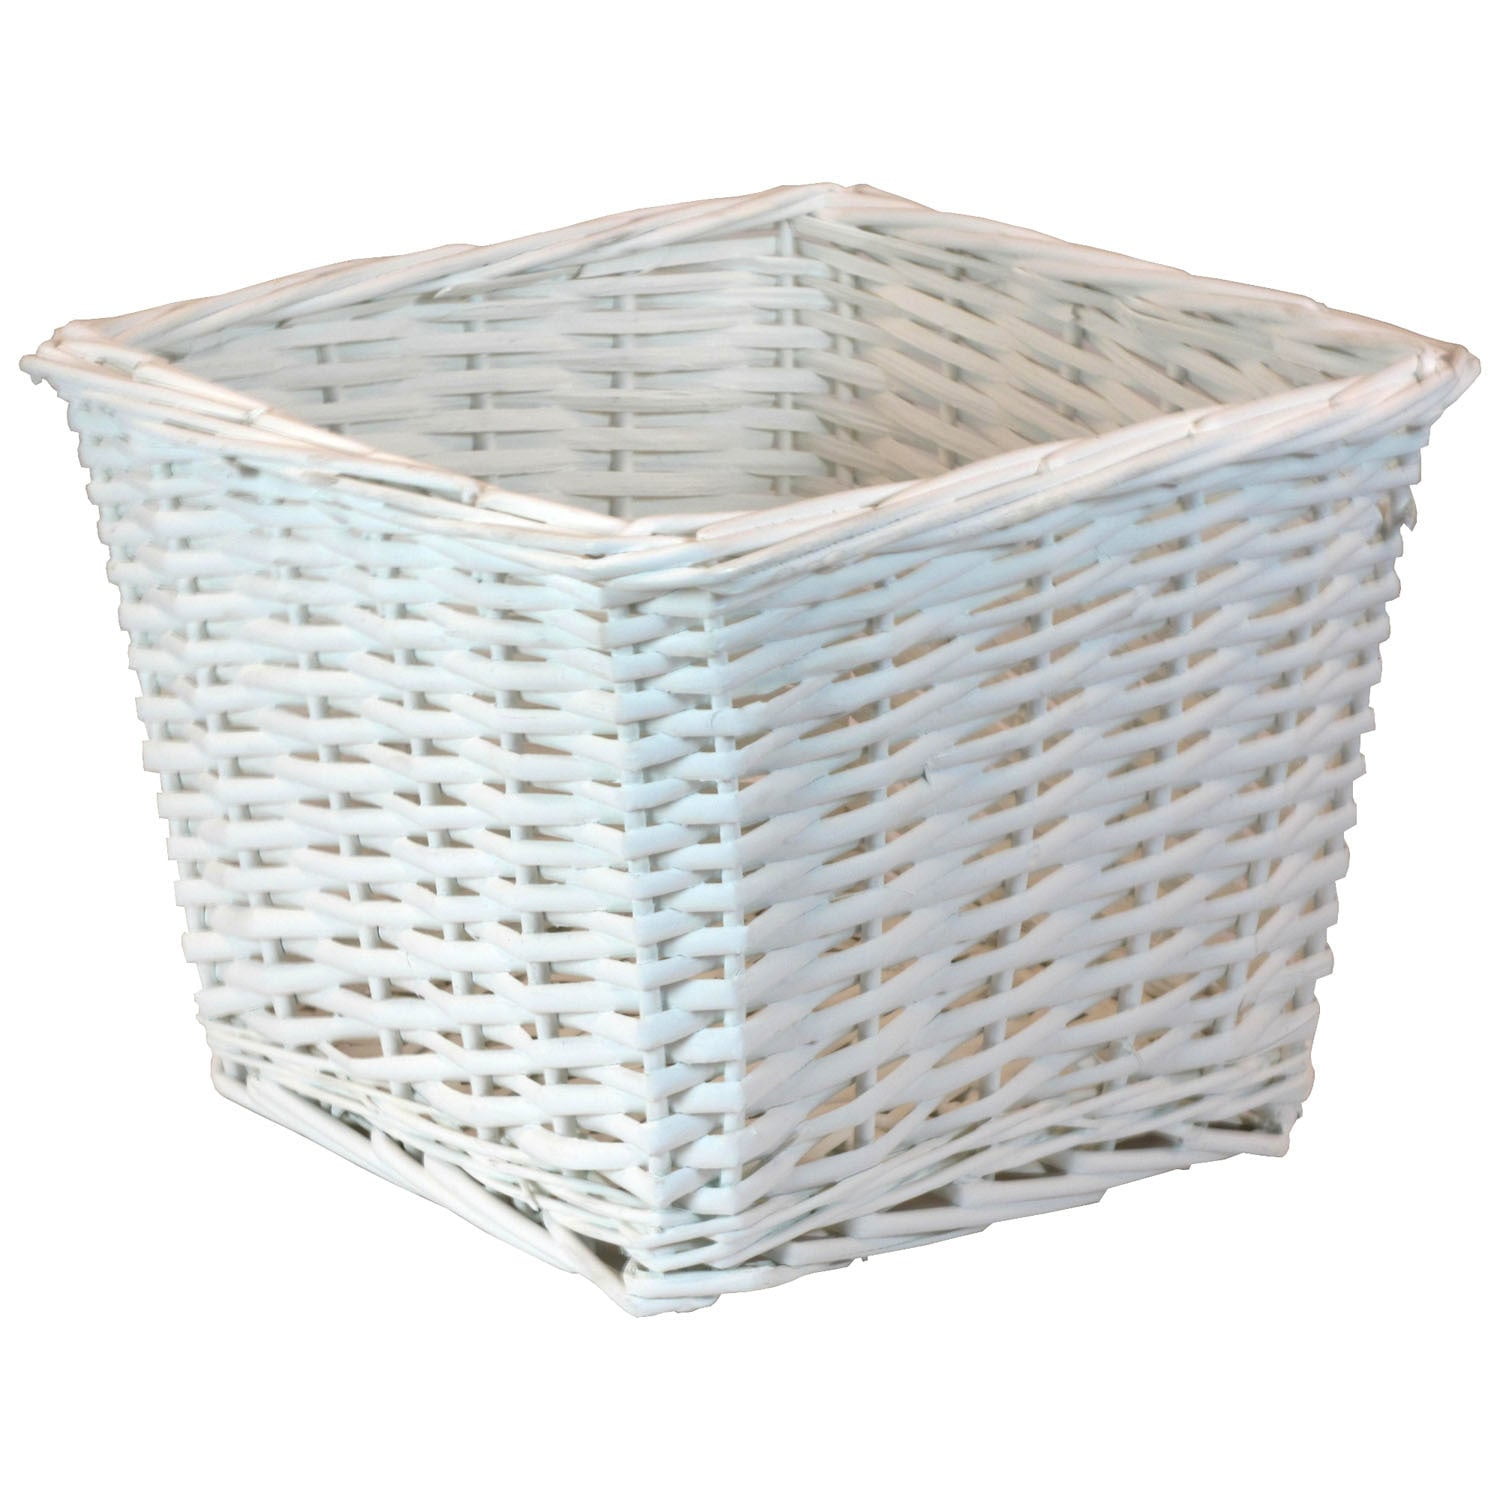 10 inch storage basket